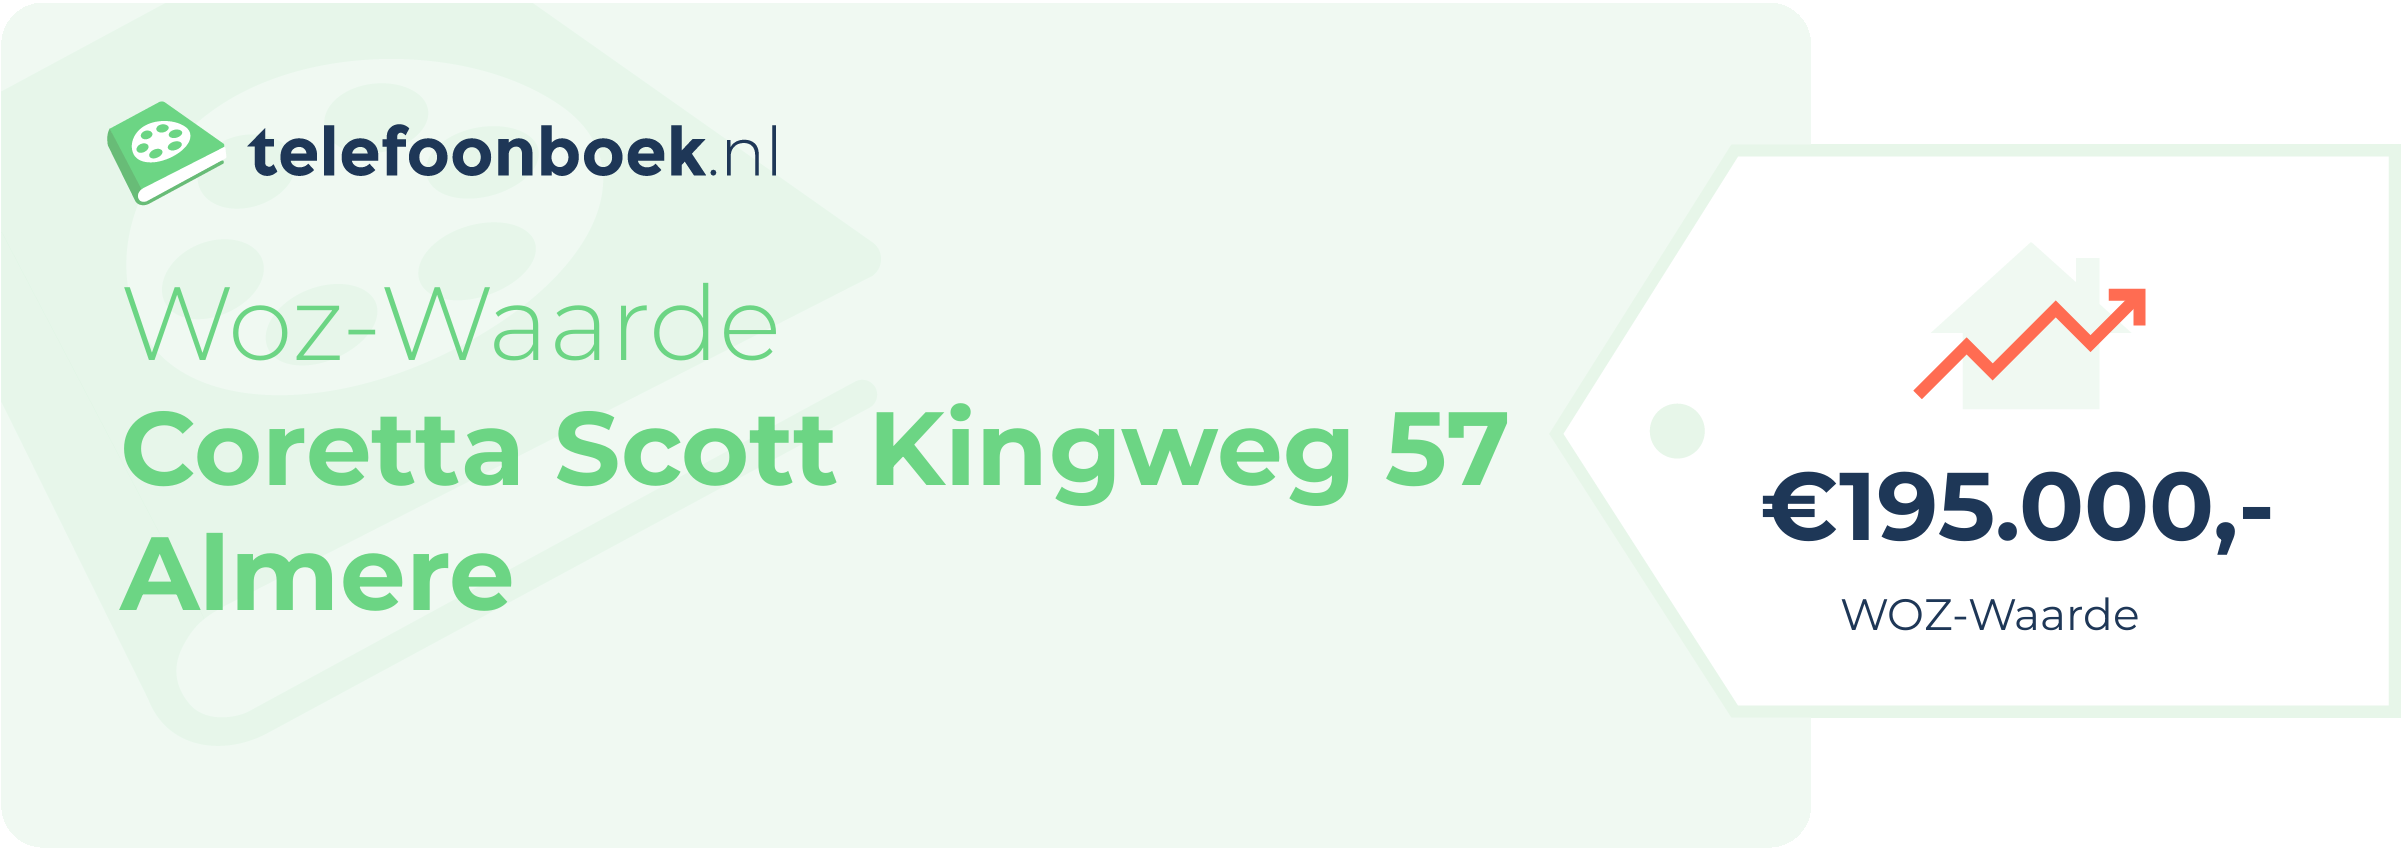 WOZ-waarde Coretta Scott Kingweg 57 Almere